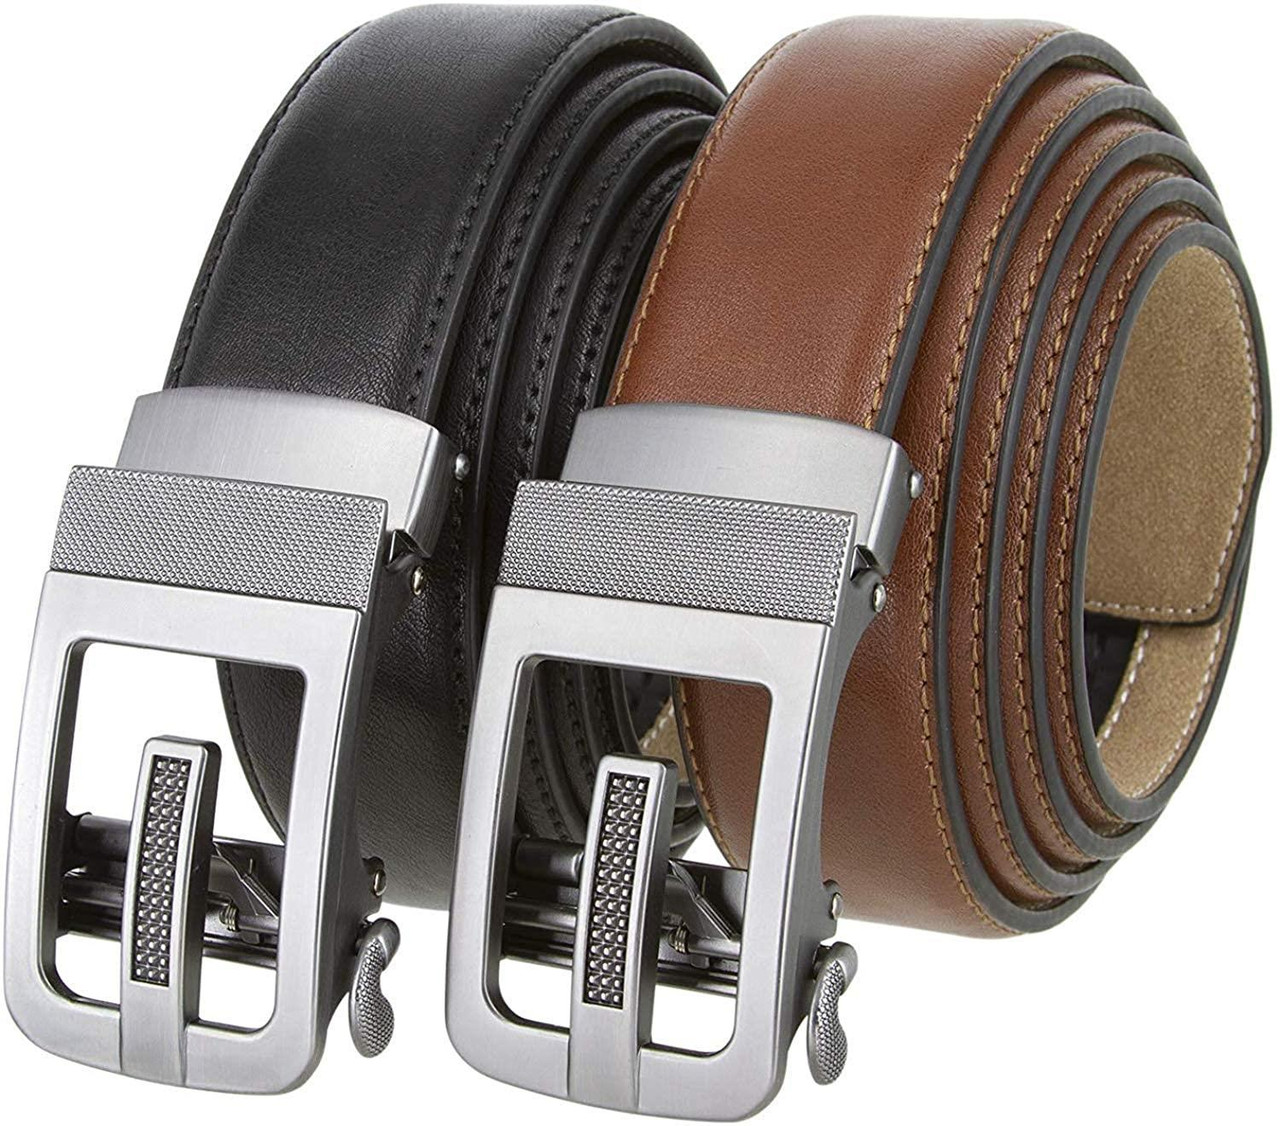 352063 Men's Slide Ratchet Belt Leather Casual Dress Belt 1-3/8